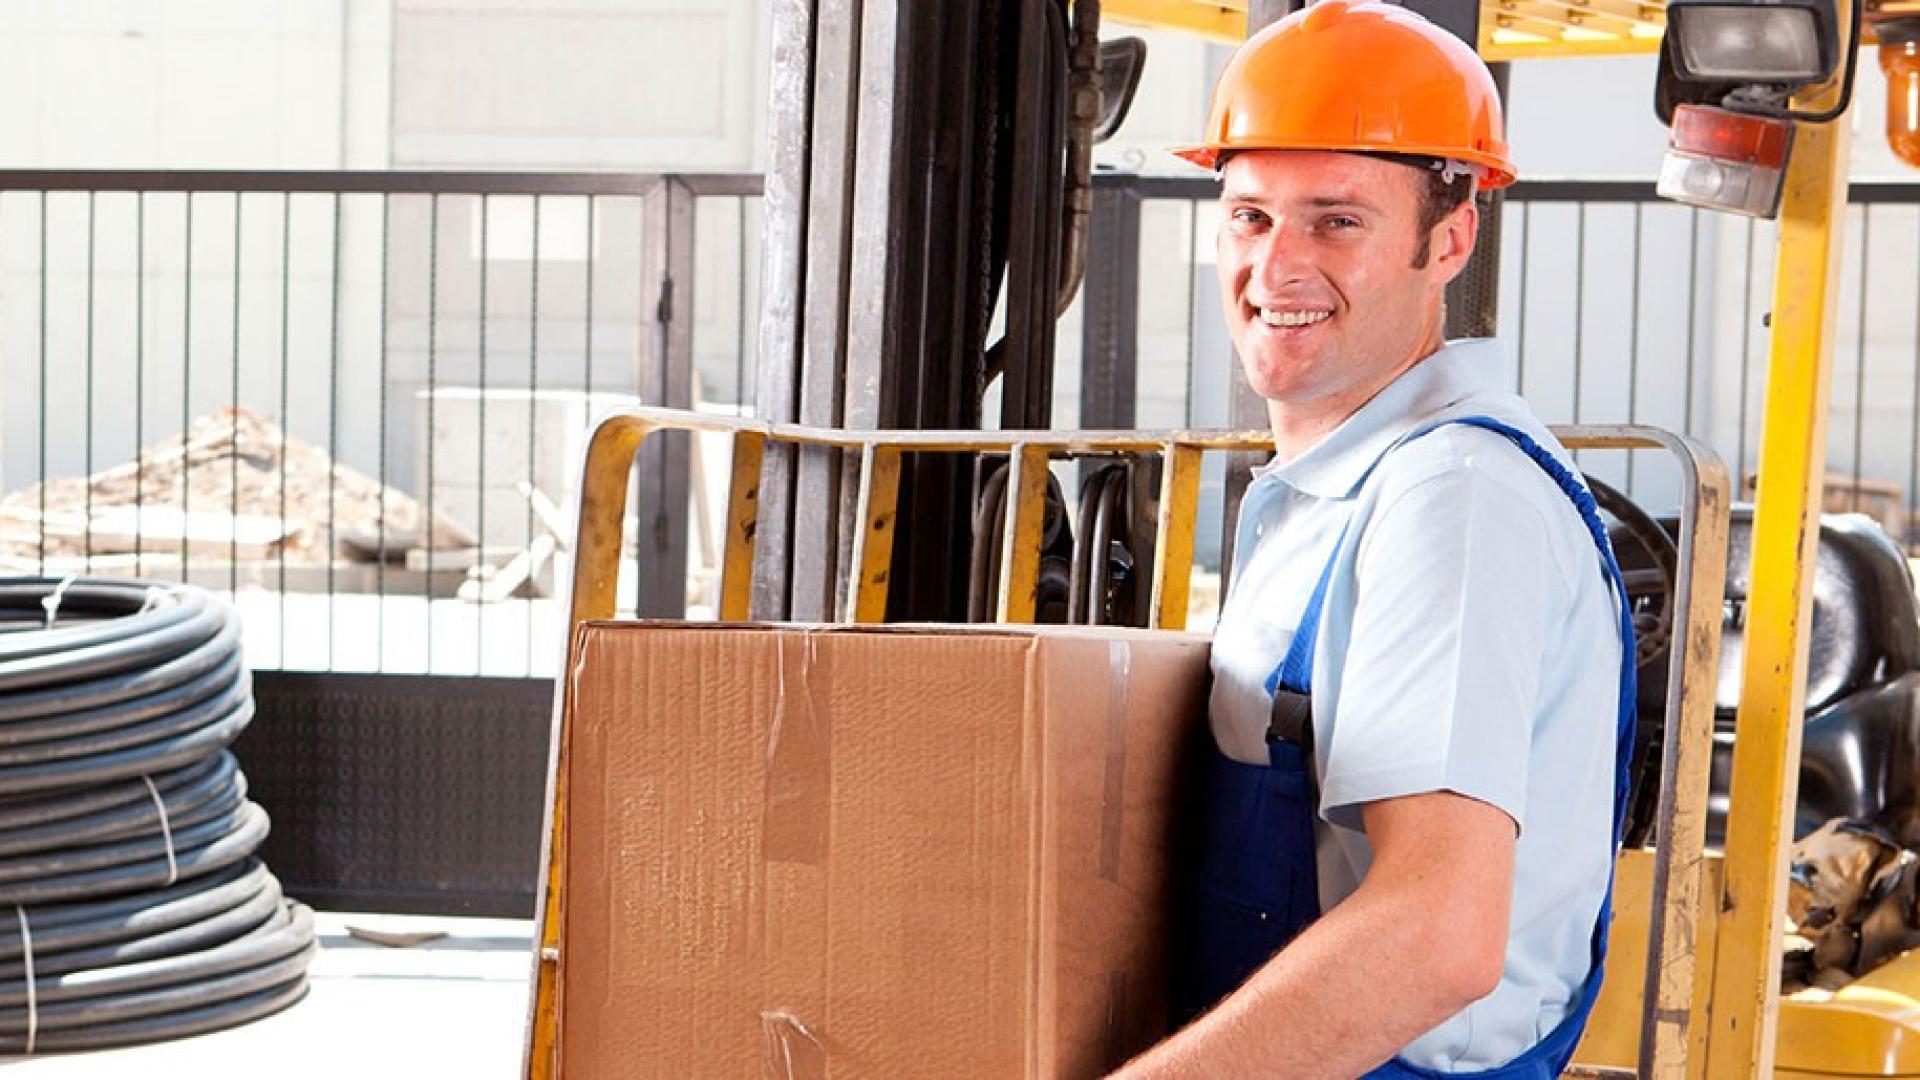 Ein Mann mit orangenem Helm und Blaumann hält einen Karton in der Hand und lächelt. 